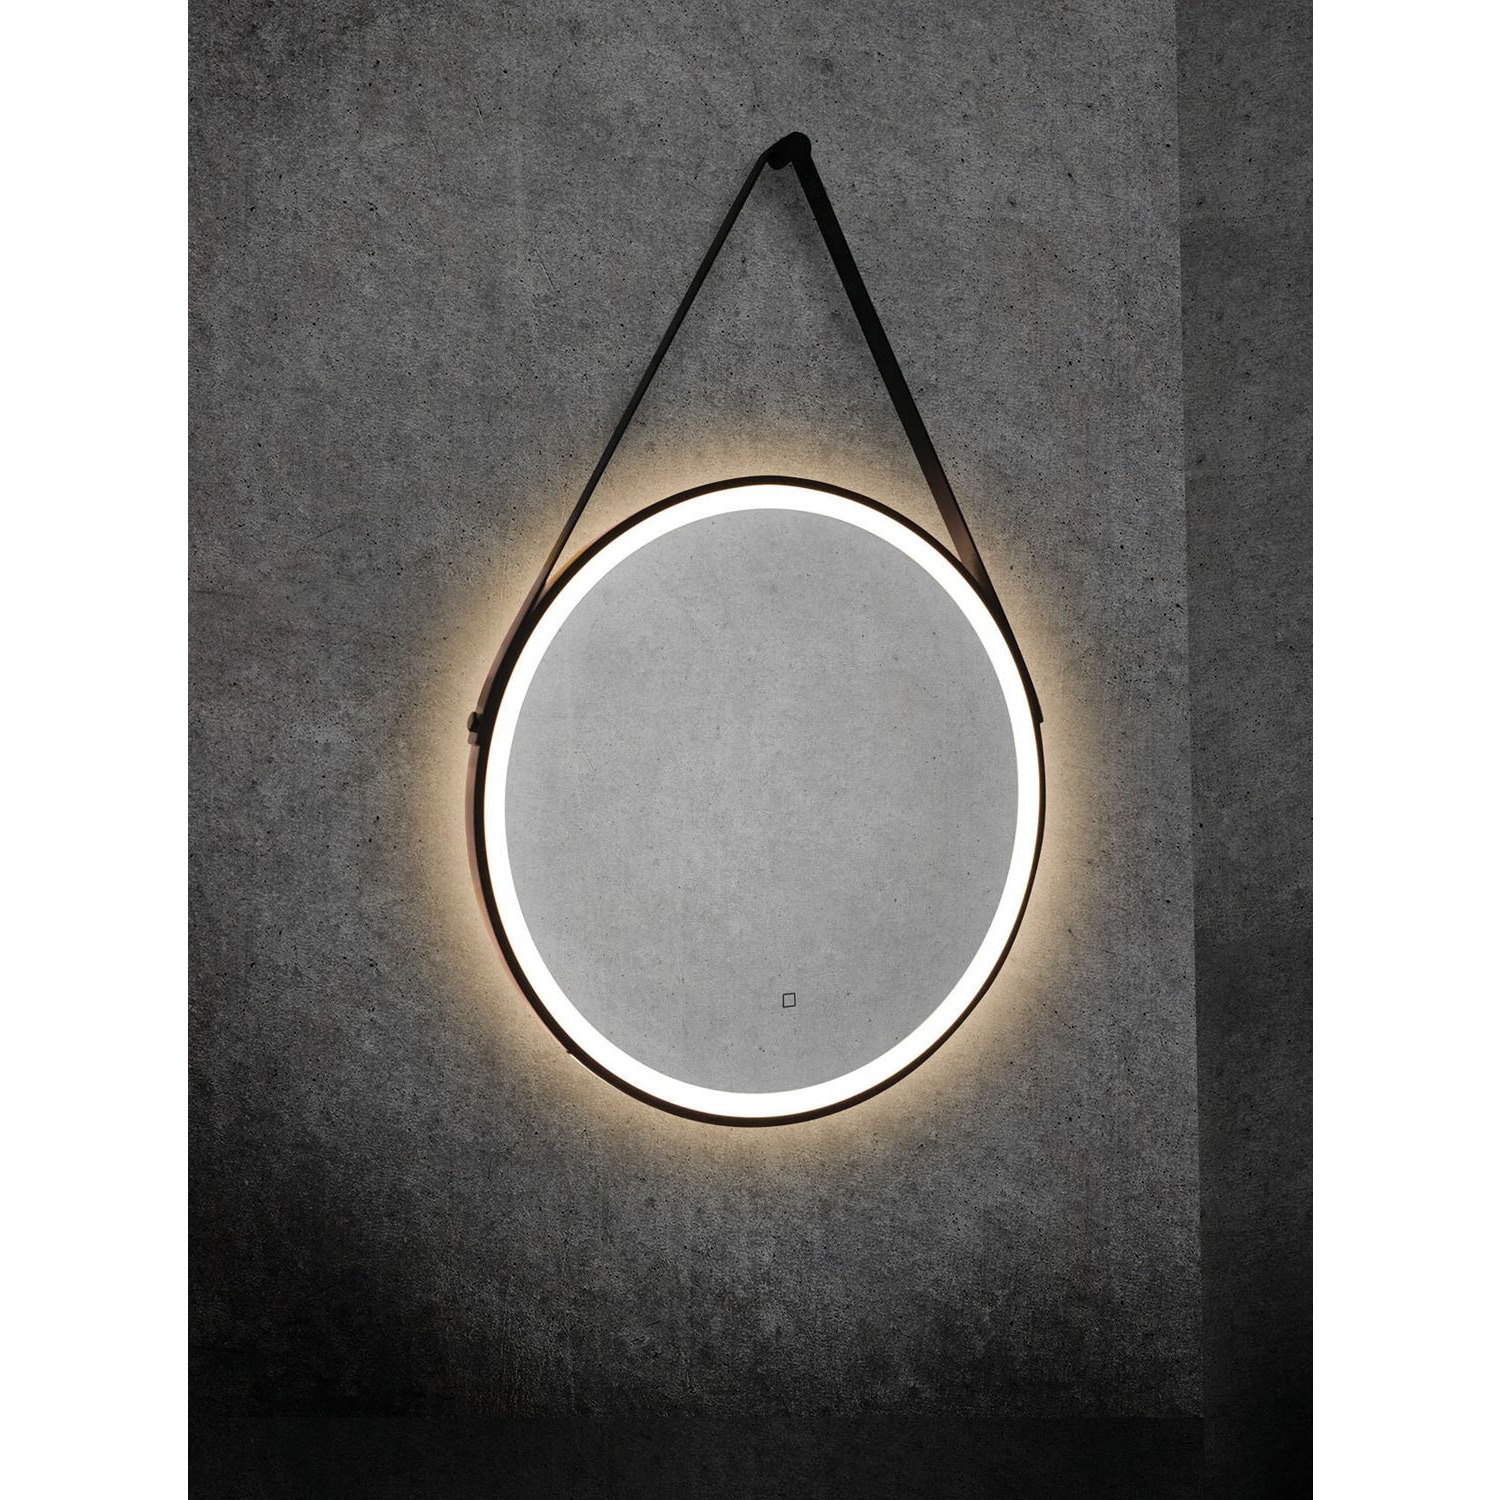 HiB Pendant Illuminated Bathroom Mirror - image 1